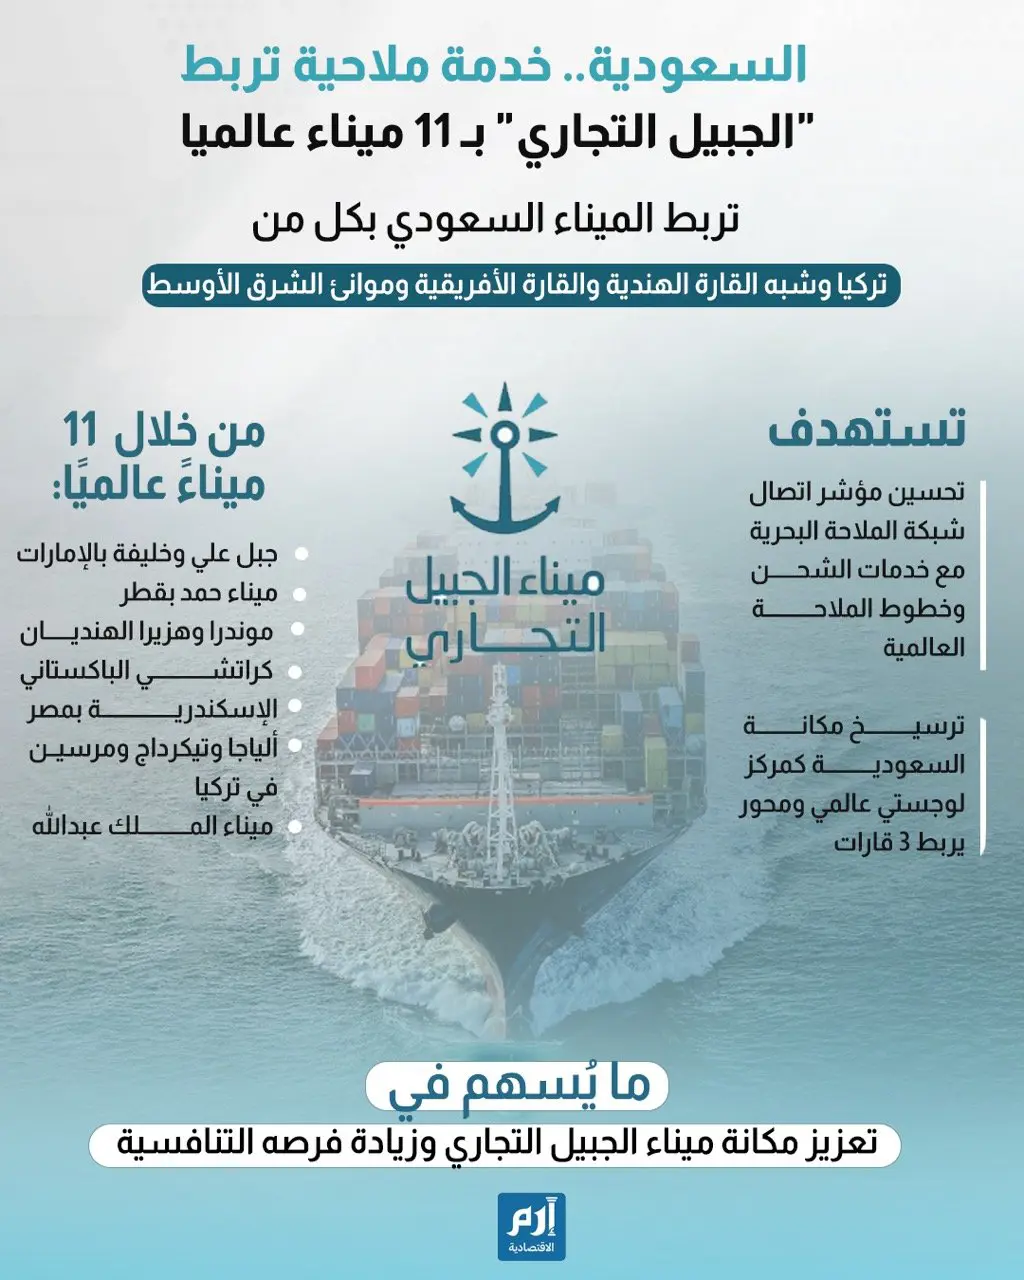 السعودية تربط "الجبيل التجاري" بـ 11 ميناء عالميا